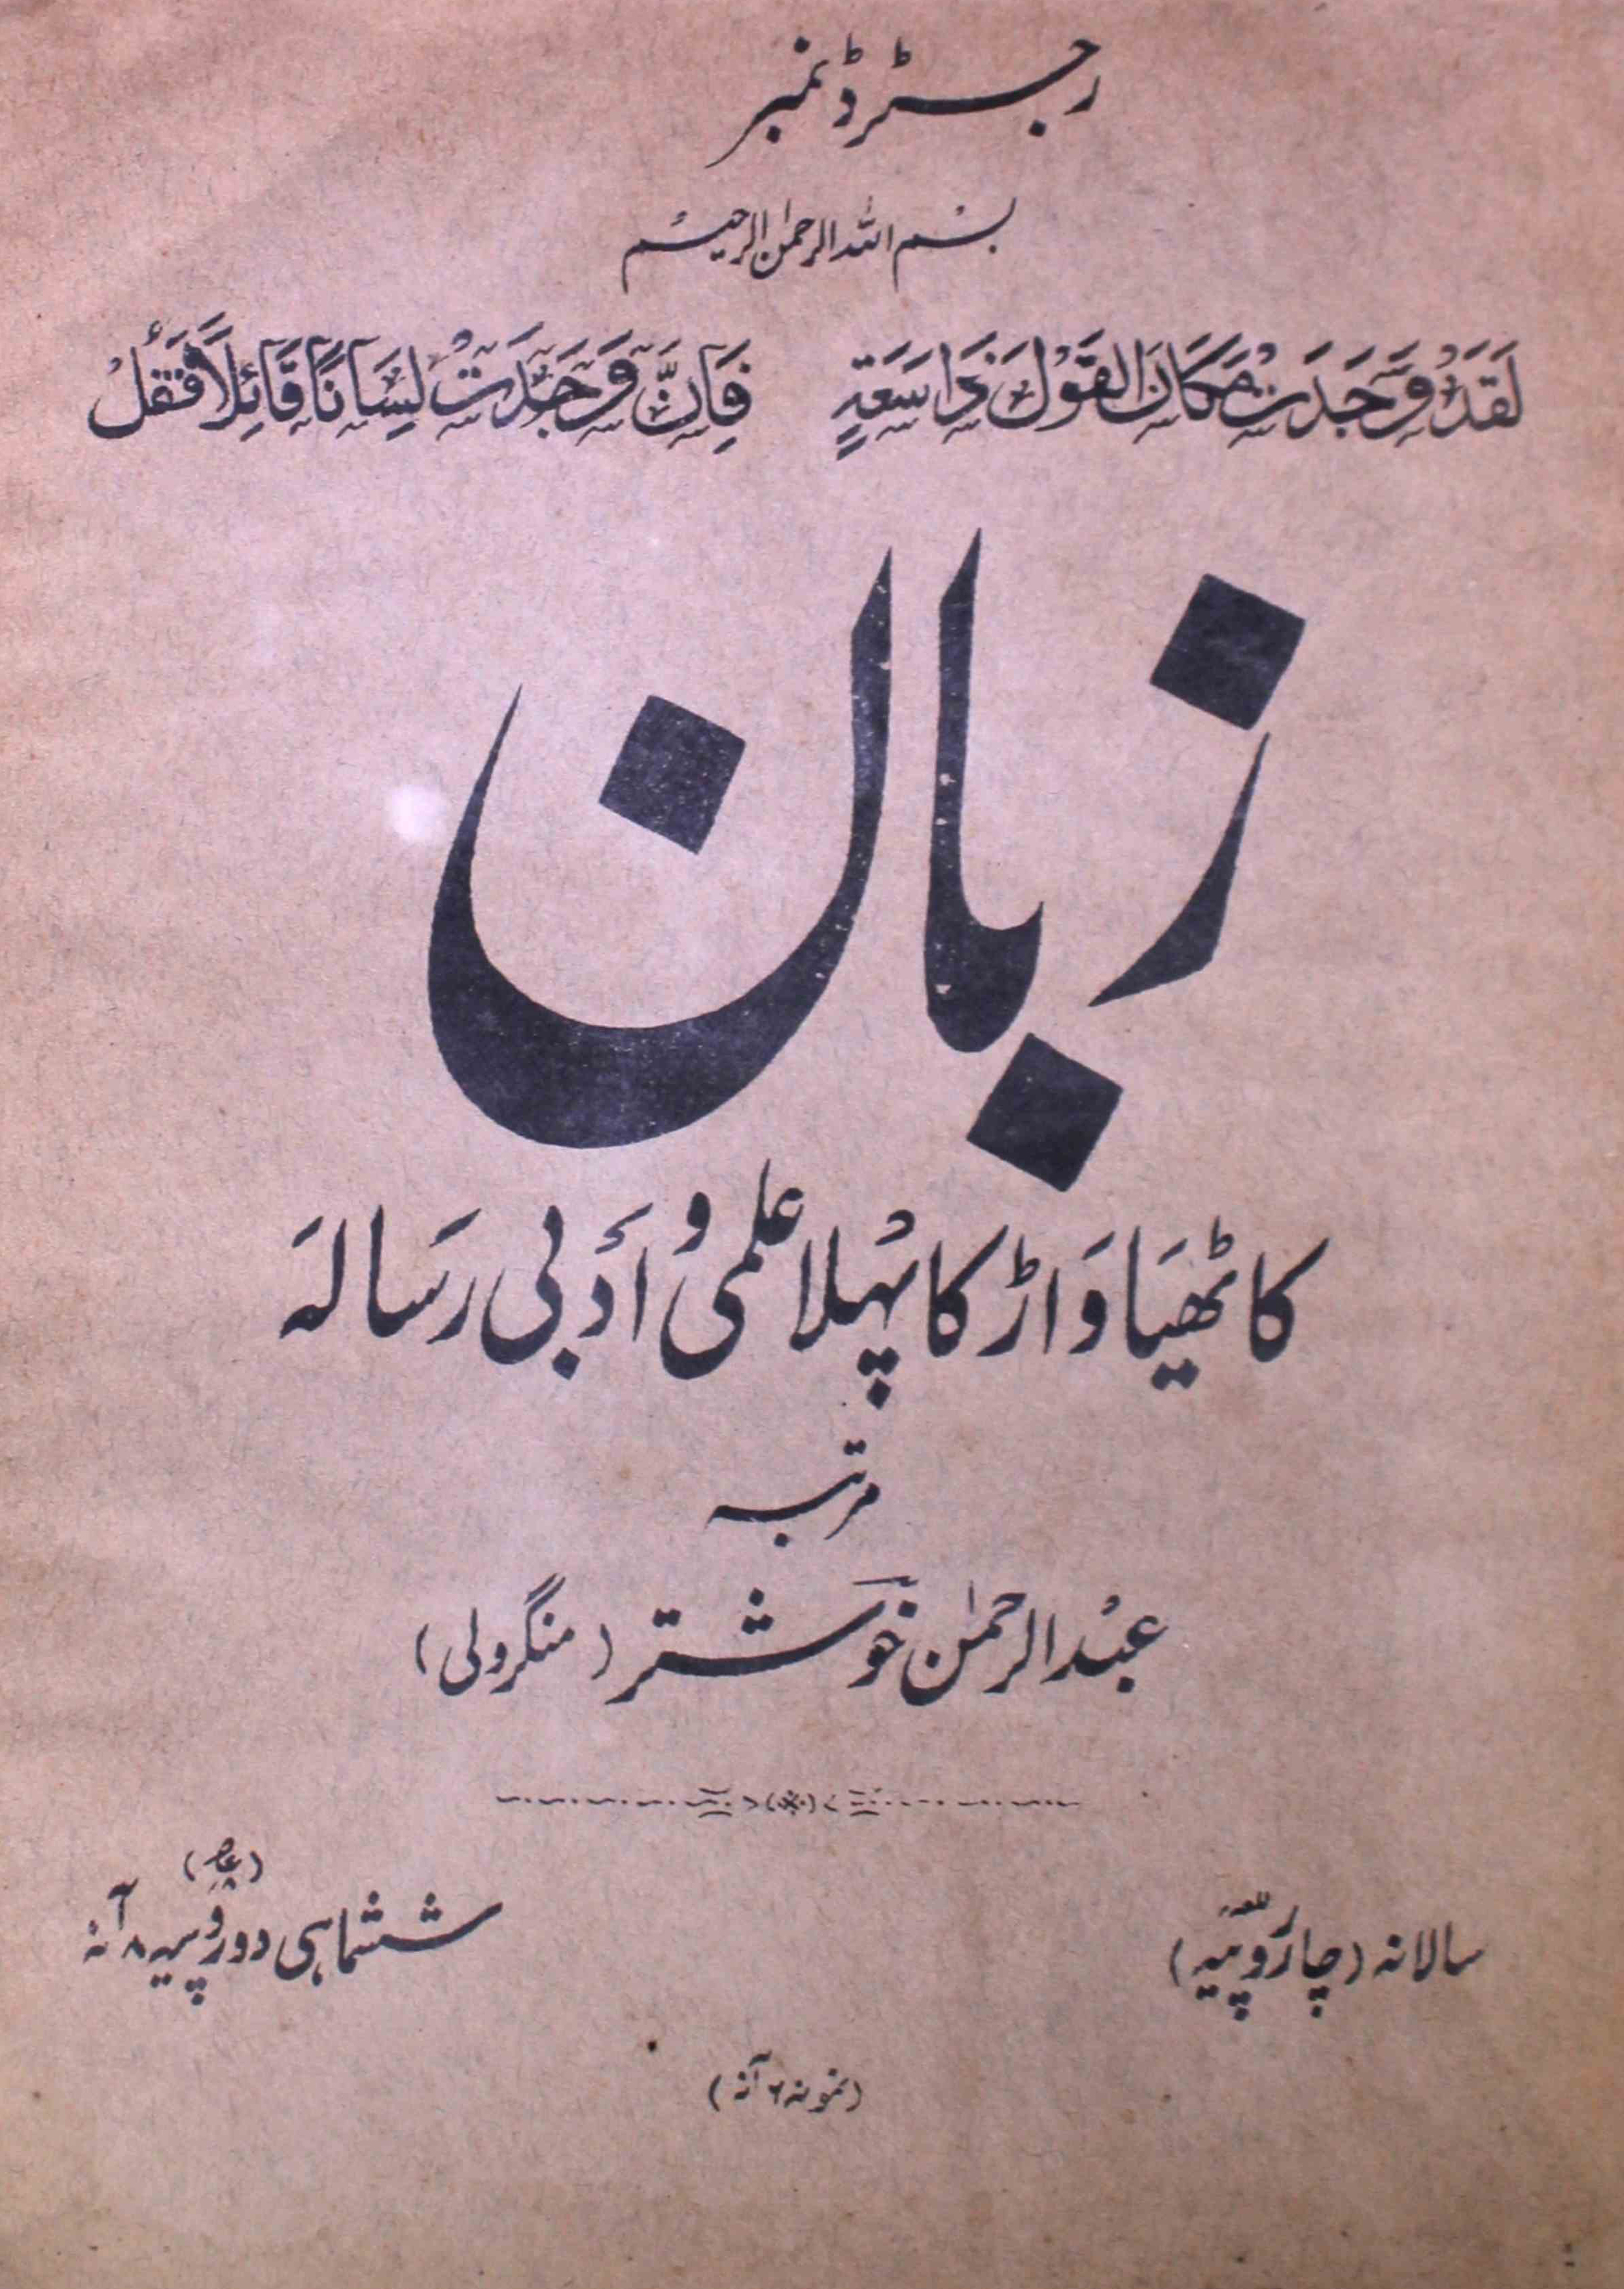 Zaban-shumara-number-001-abdur-rahman-khushtar-mangroli-magazines-1